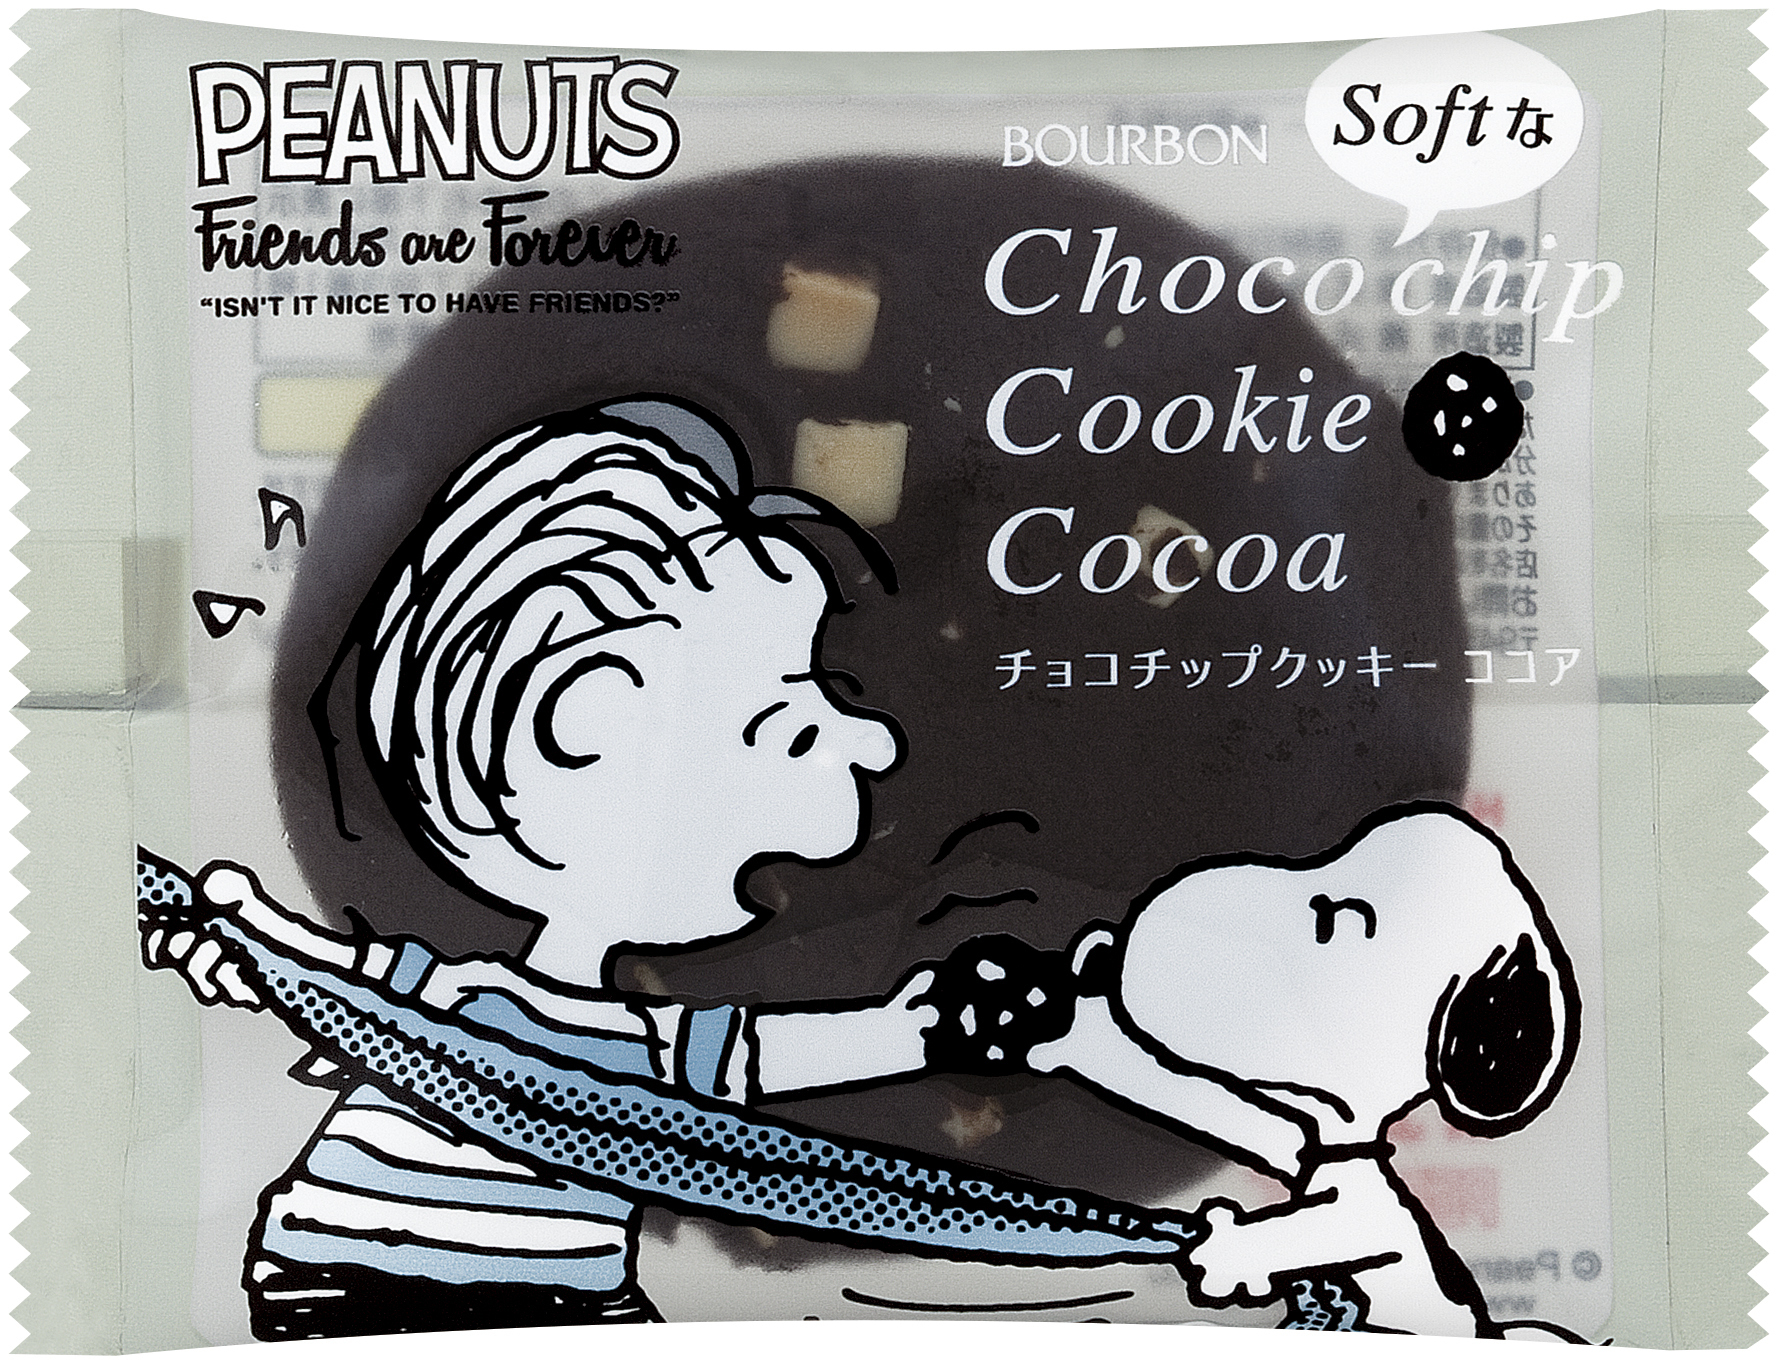 ブルボン スヌーピーデザインのチョコチップクッキー2品がソフトタイプクッキーで11月21日 火 に新登場 株式会社ブルボンのプレスリリース